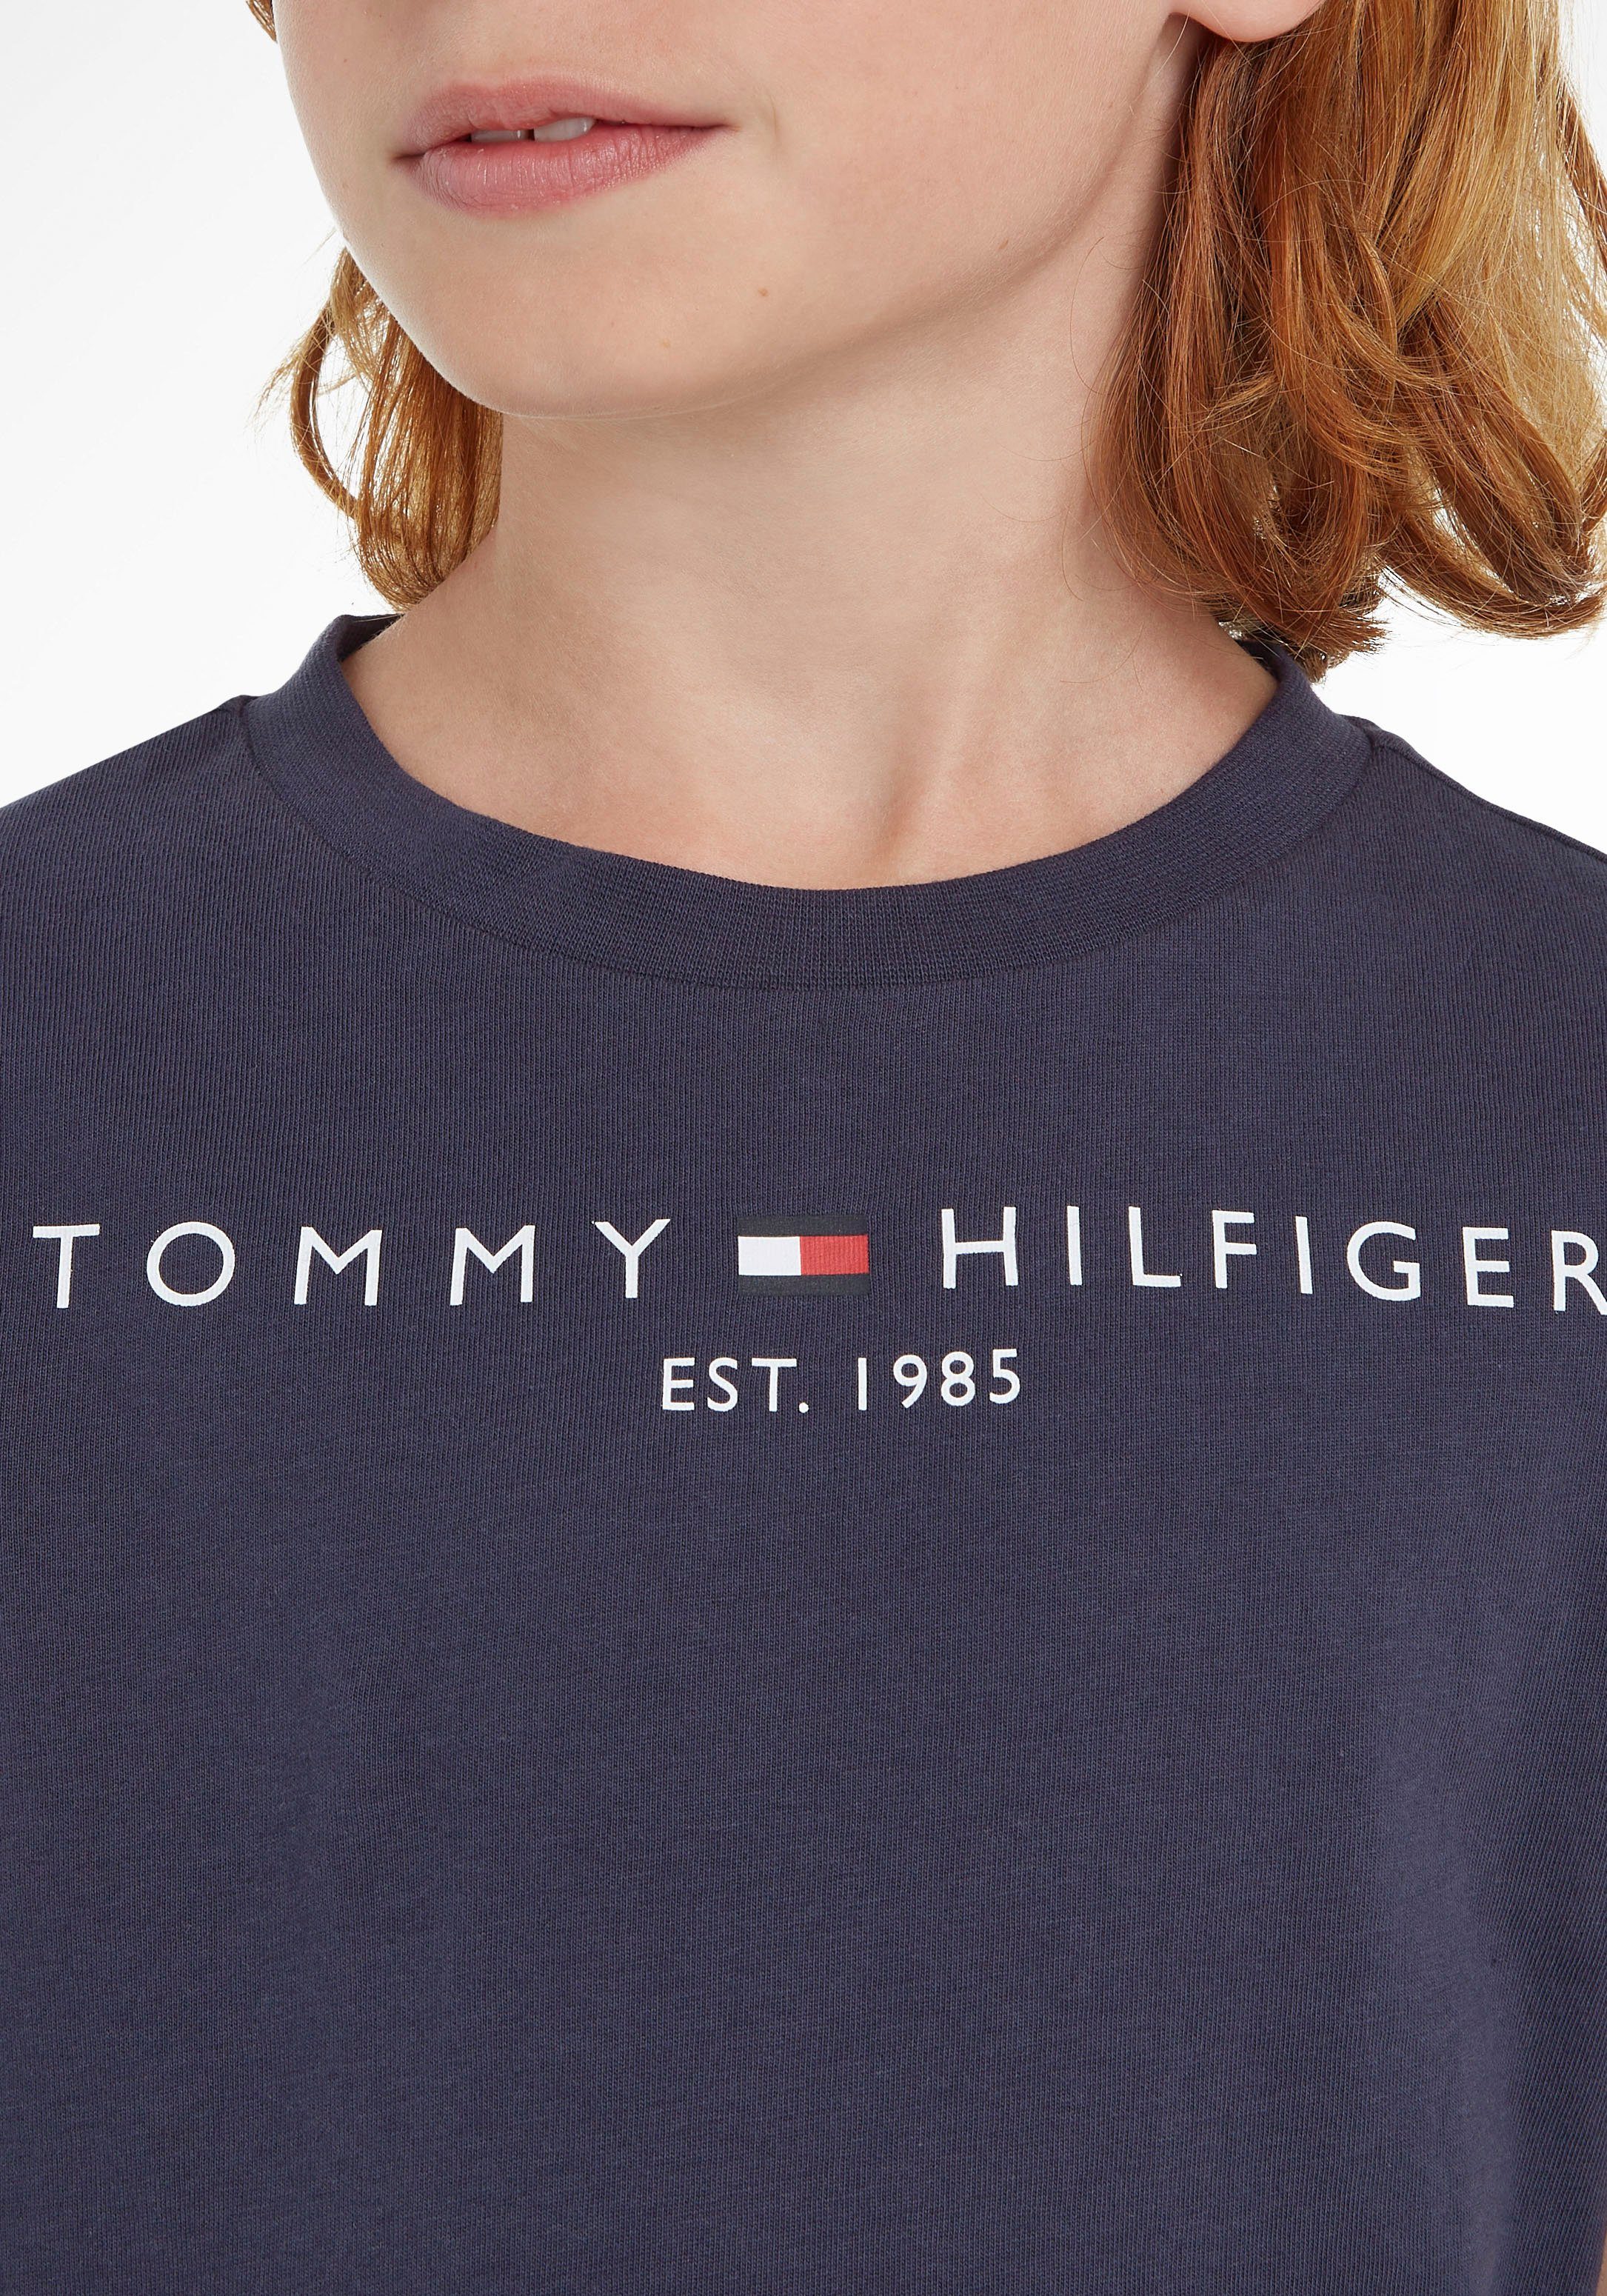 Hilfiger Jungen für Tommy T-Shirt und ESSENTIAL TEE Mädchen